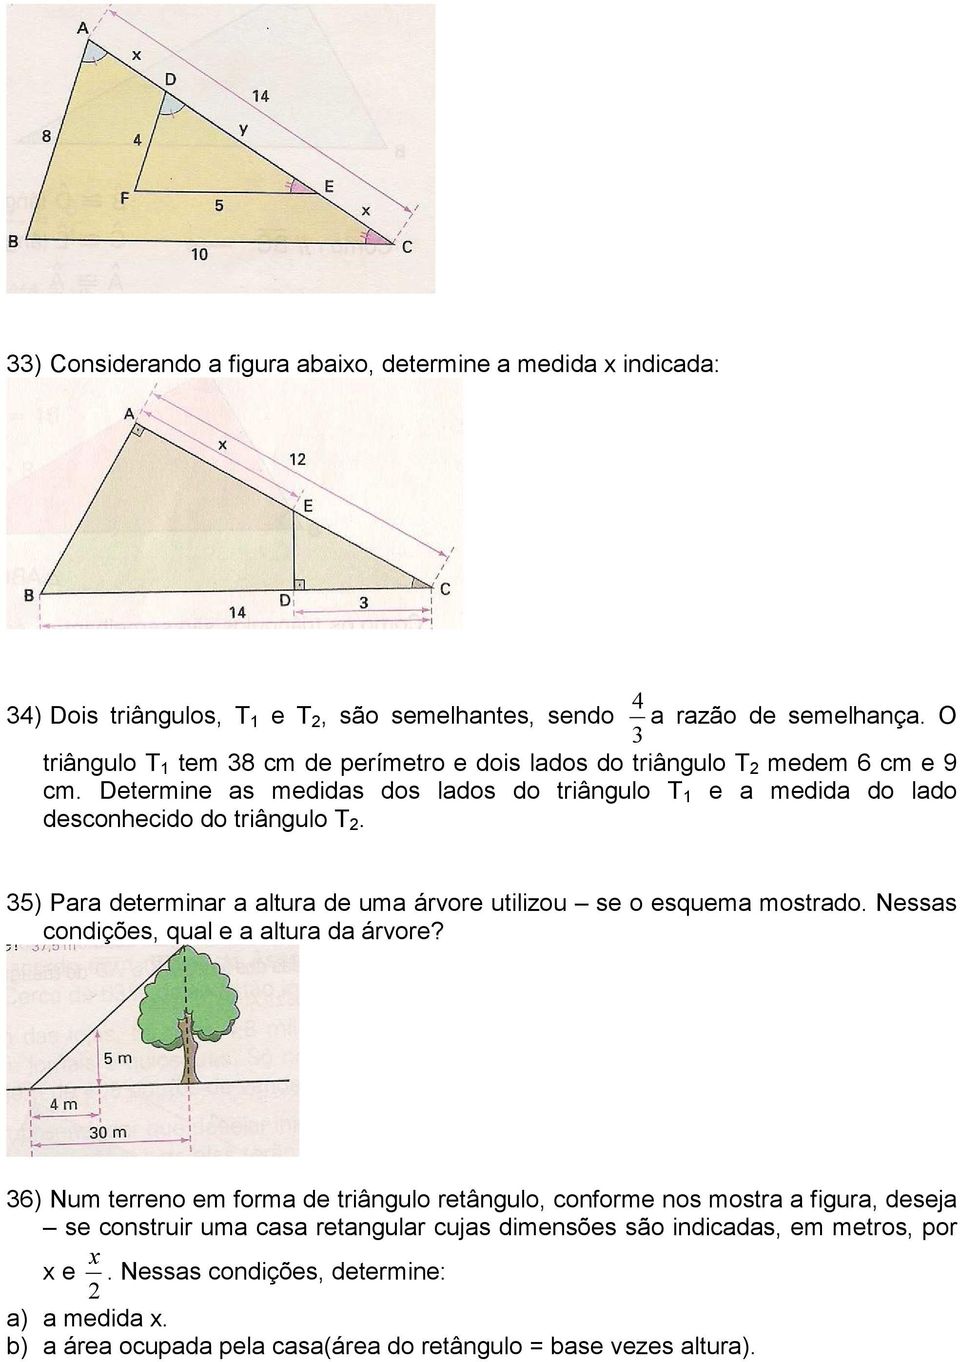 35) Para determinar a altura de uma árvore utilizou se o esquema mostrado. Nessas condições, qual e a altura da árvore?